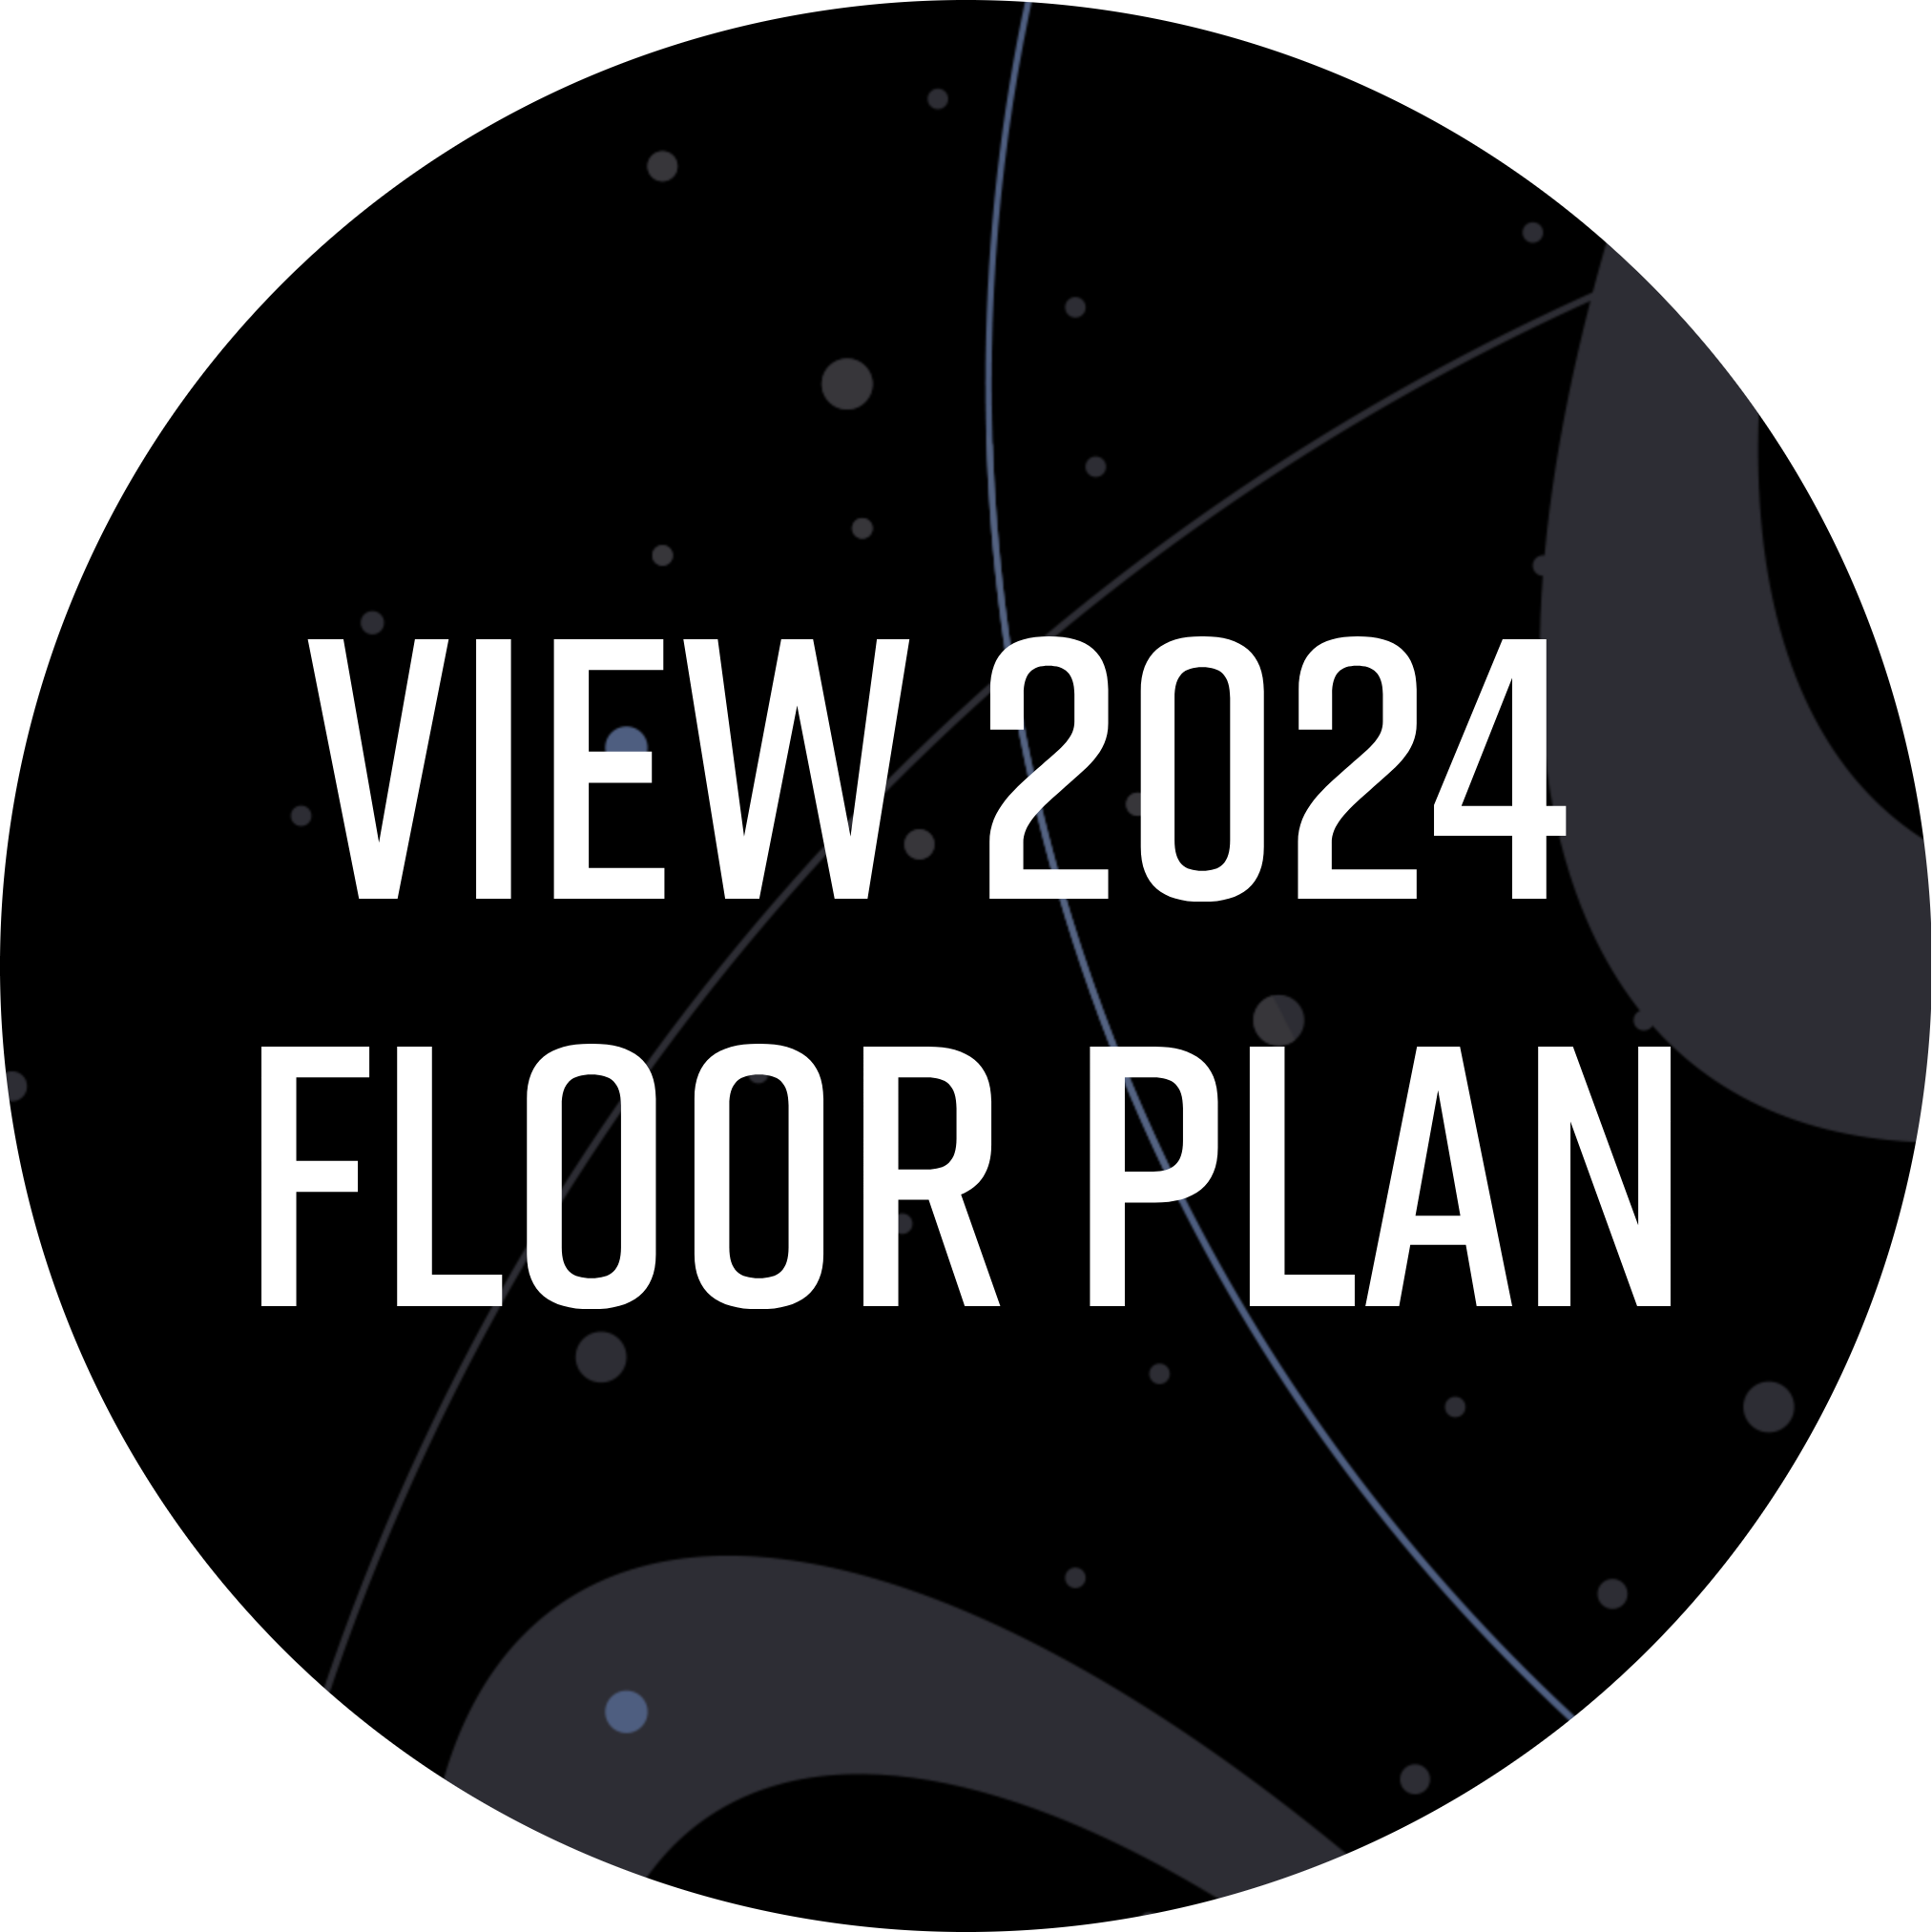 View floor plan 2024